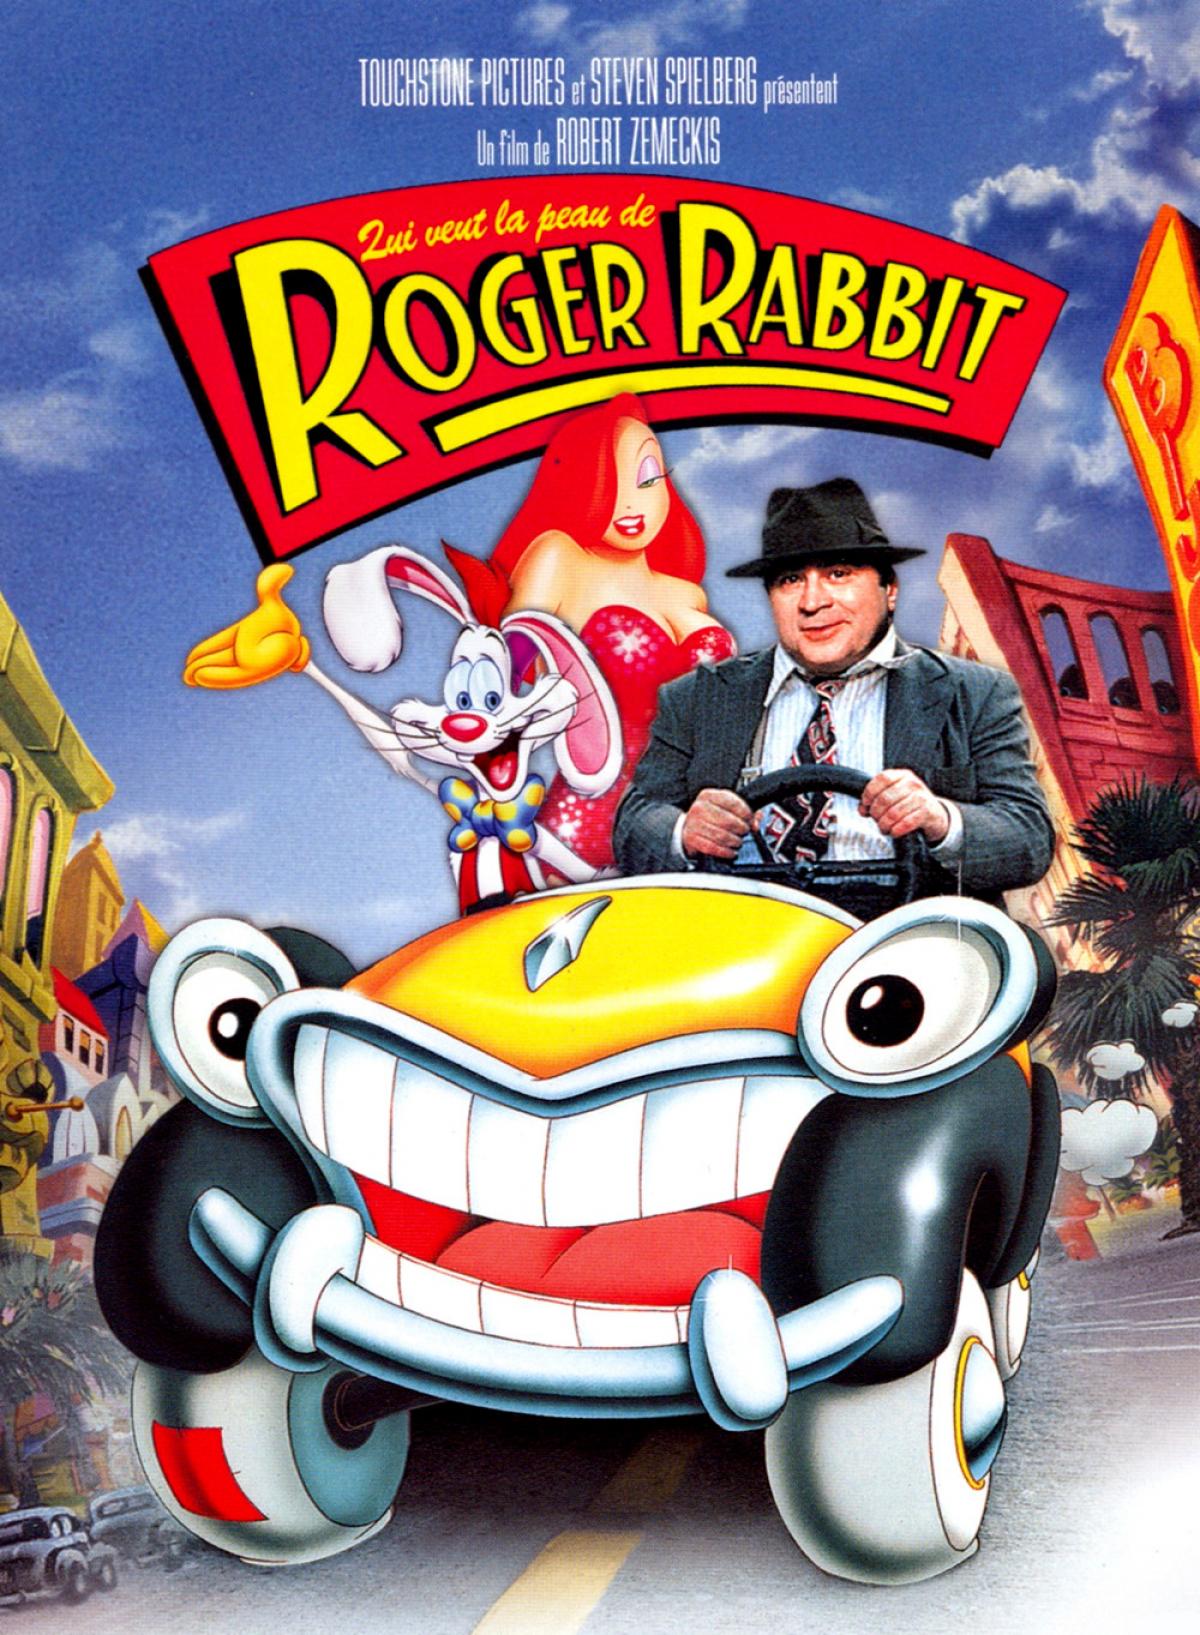 Qui veut la peau de Roger Rabbit? - 1988